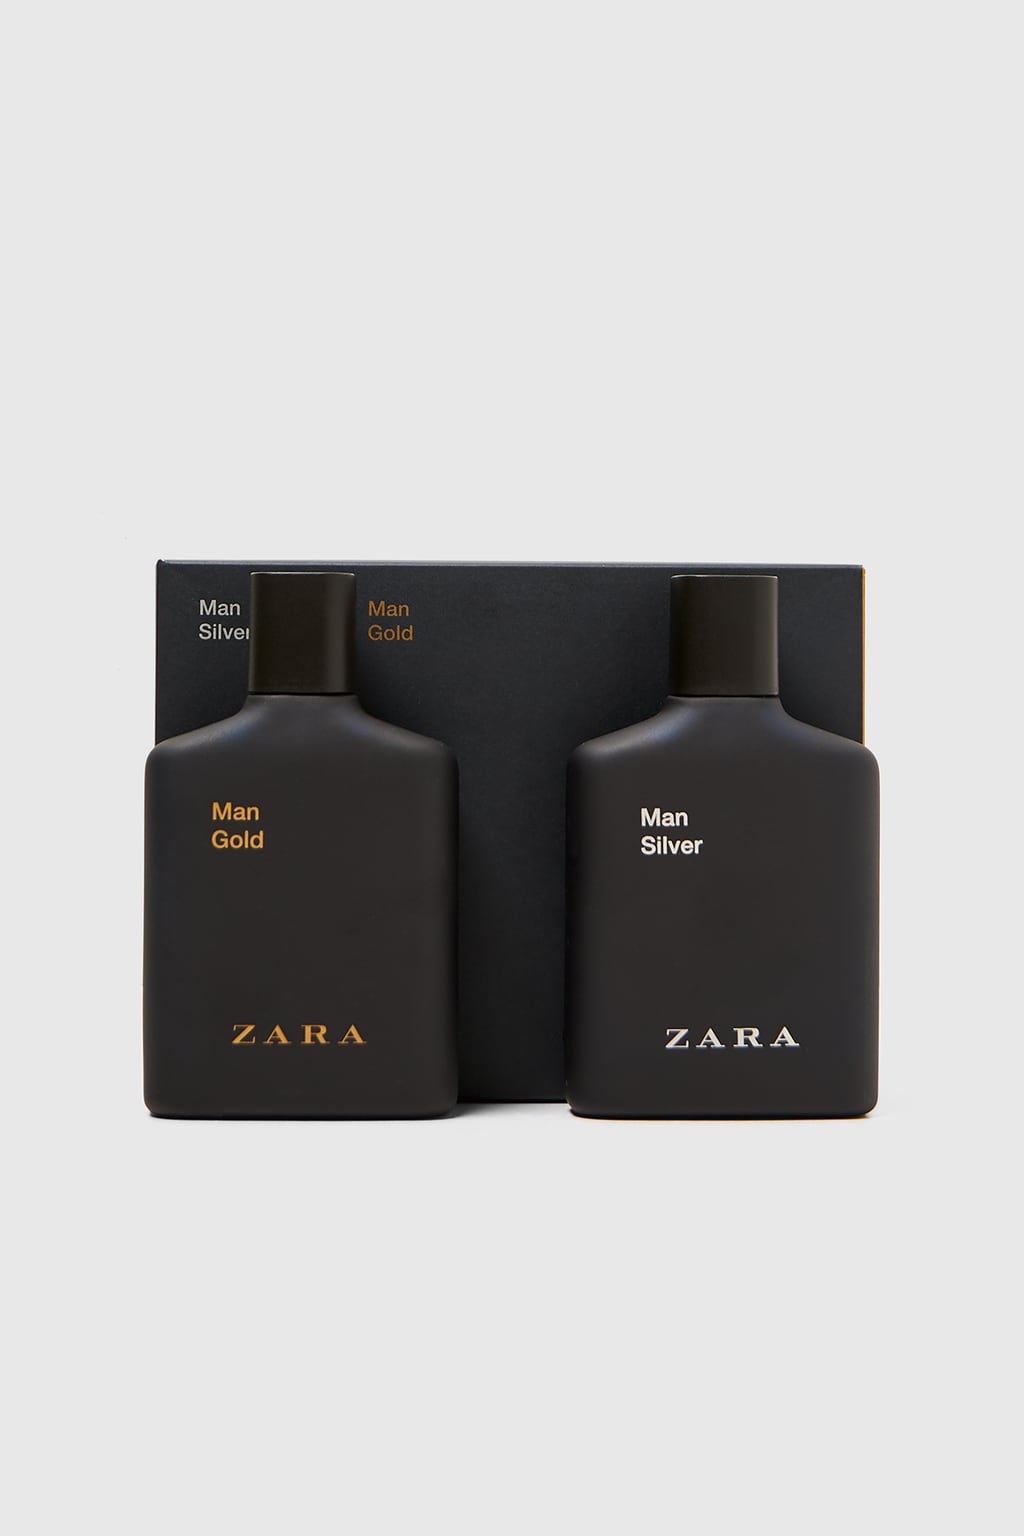 Zara Man Gold Edt 100 ml Man Silver Edt 100 ml Erkek Parfüm